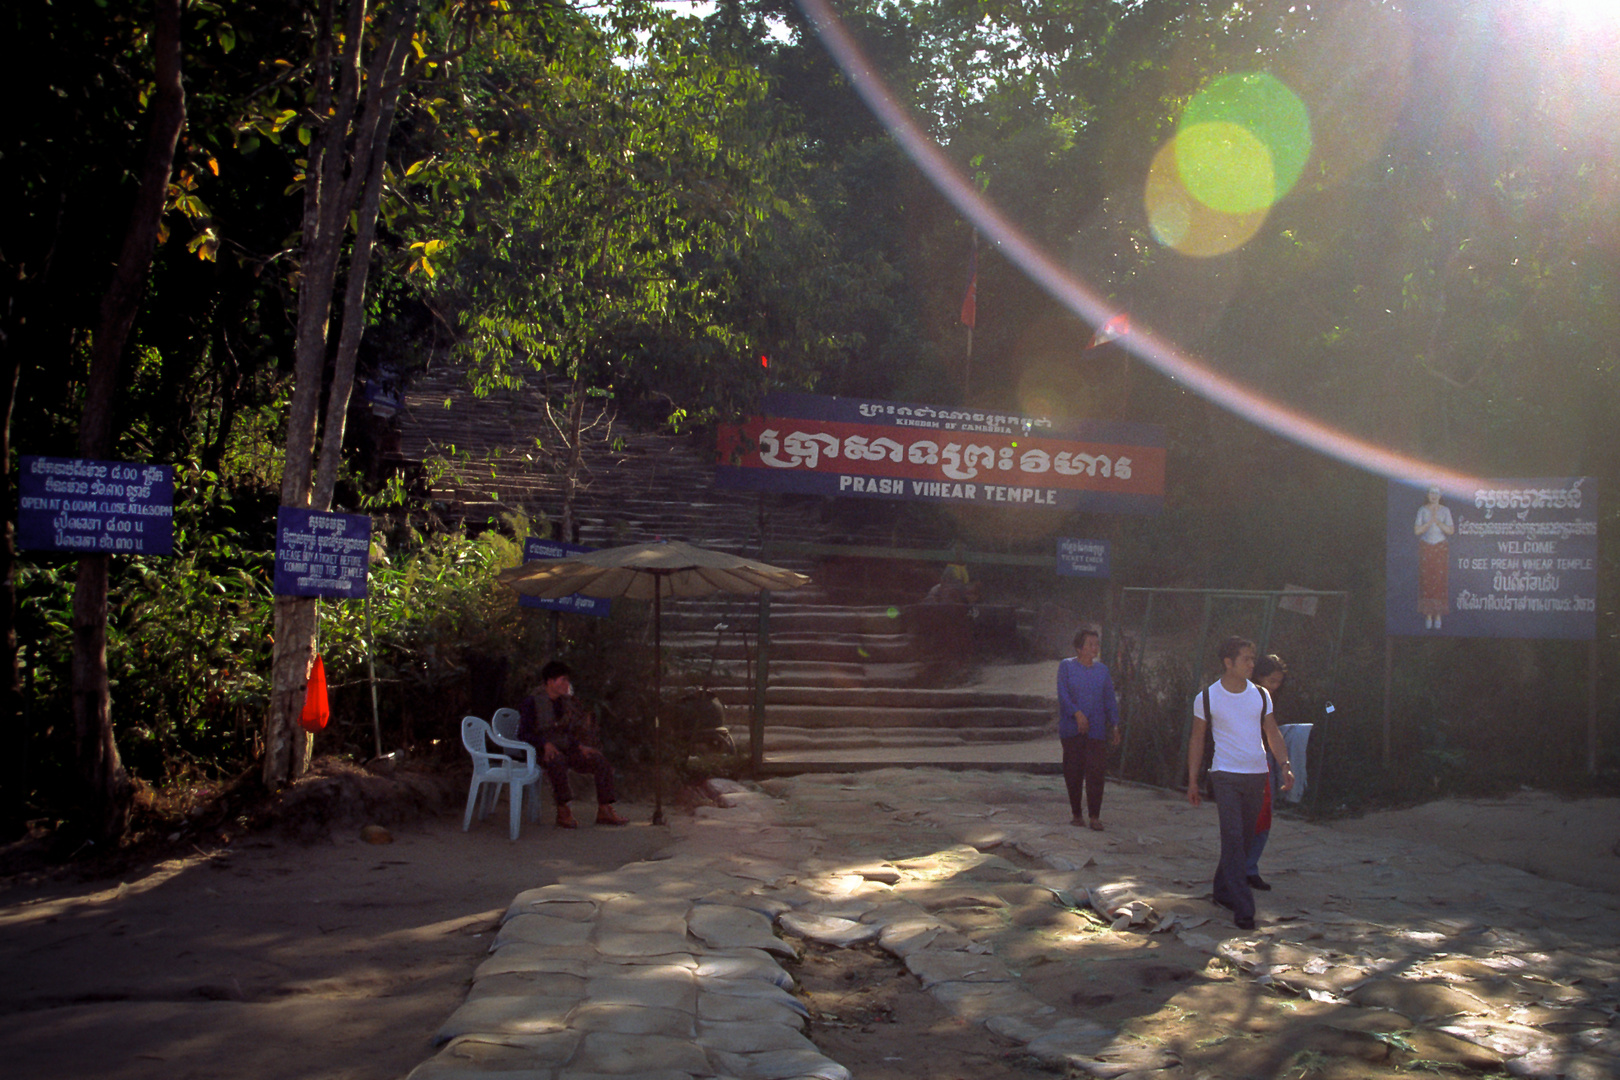 Stairway to Phra Vihaan